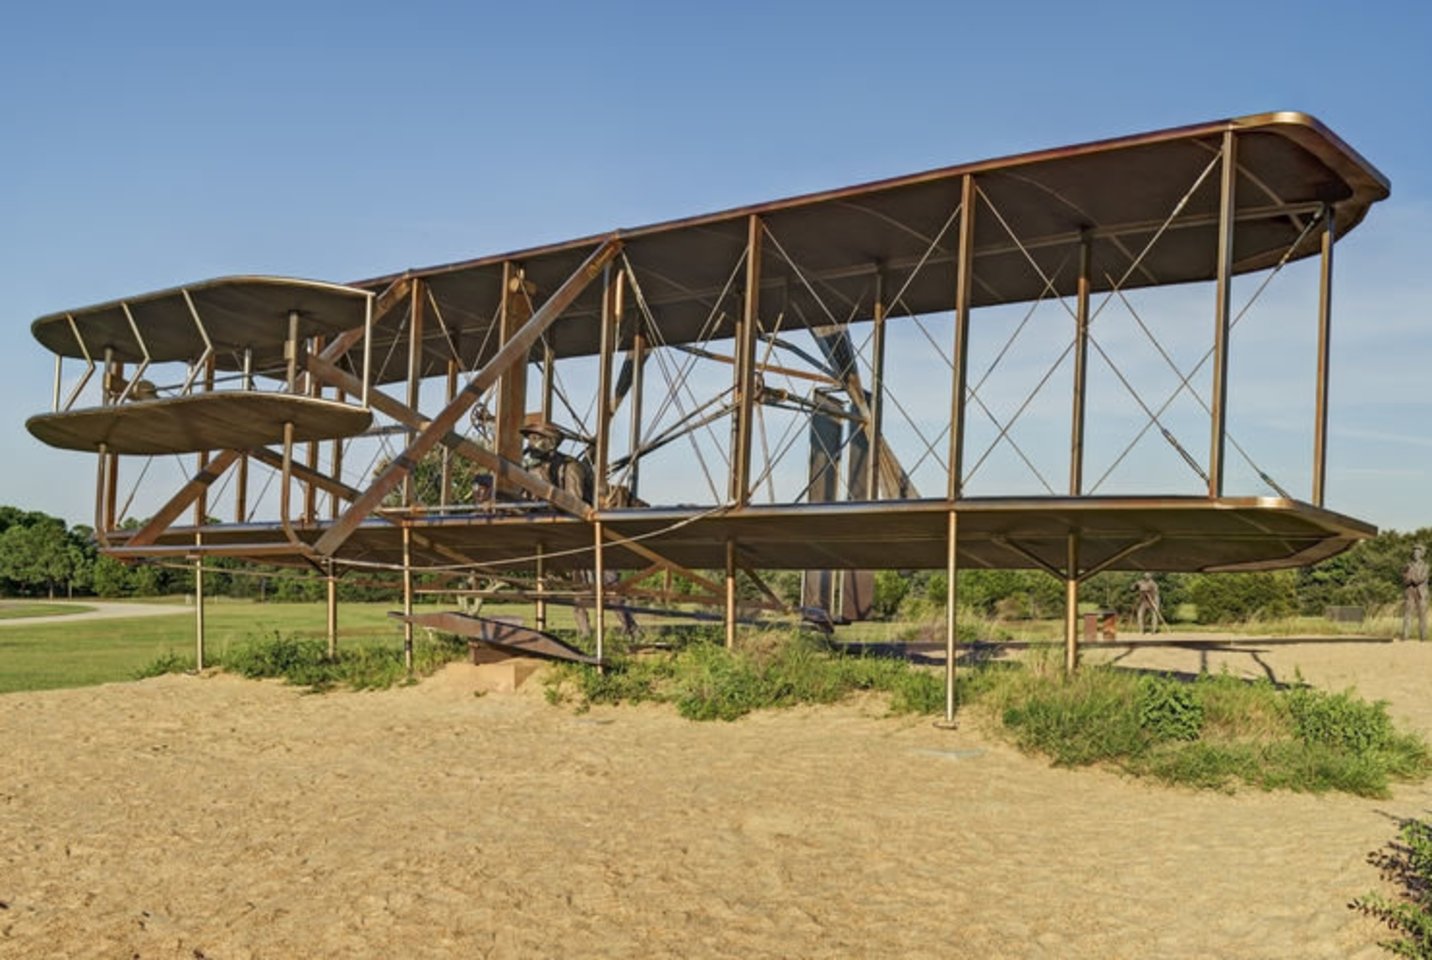 1903 m. amerikiečiai broliai Orville’as ir Wilburas Wrightai savo gamybos sklandytuvu, kuriame įrengė keturių cilindrų vidaus degimo stūmoklinį variklį, pakilo į orą ir išsilaikė jame 59 sekundes nuskrisdami 260 metrų. Wrightai laikomi aviacijos istorijos pradininkais.<br>123rf